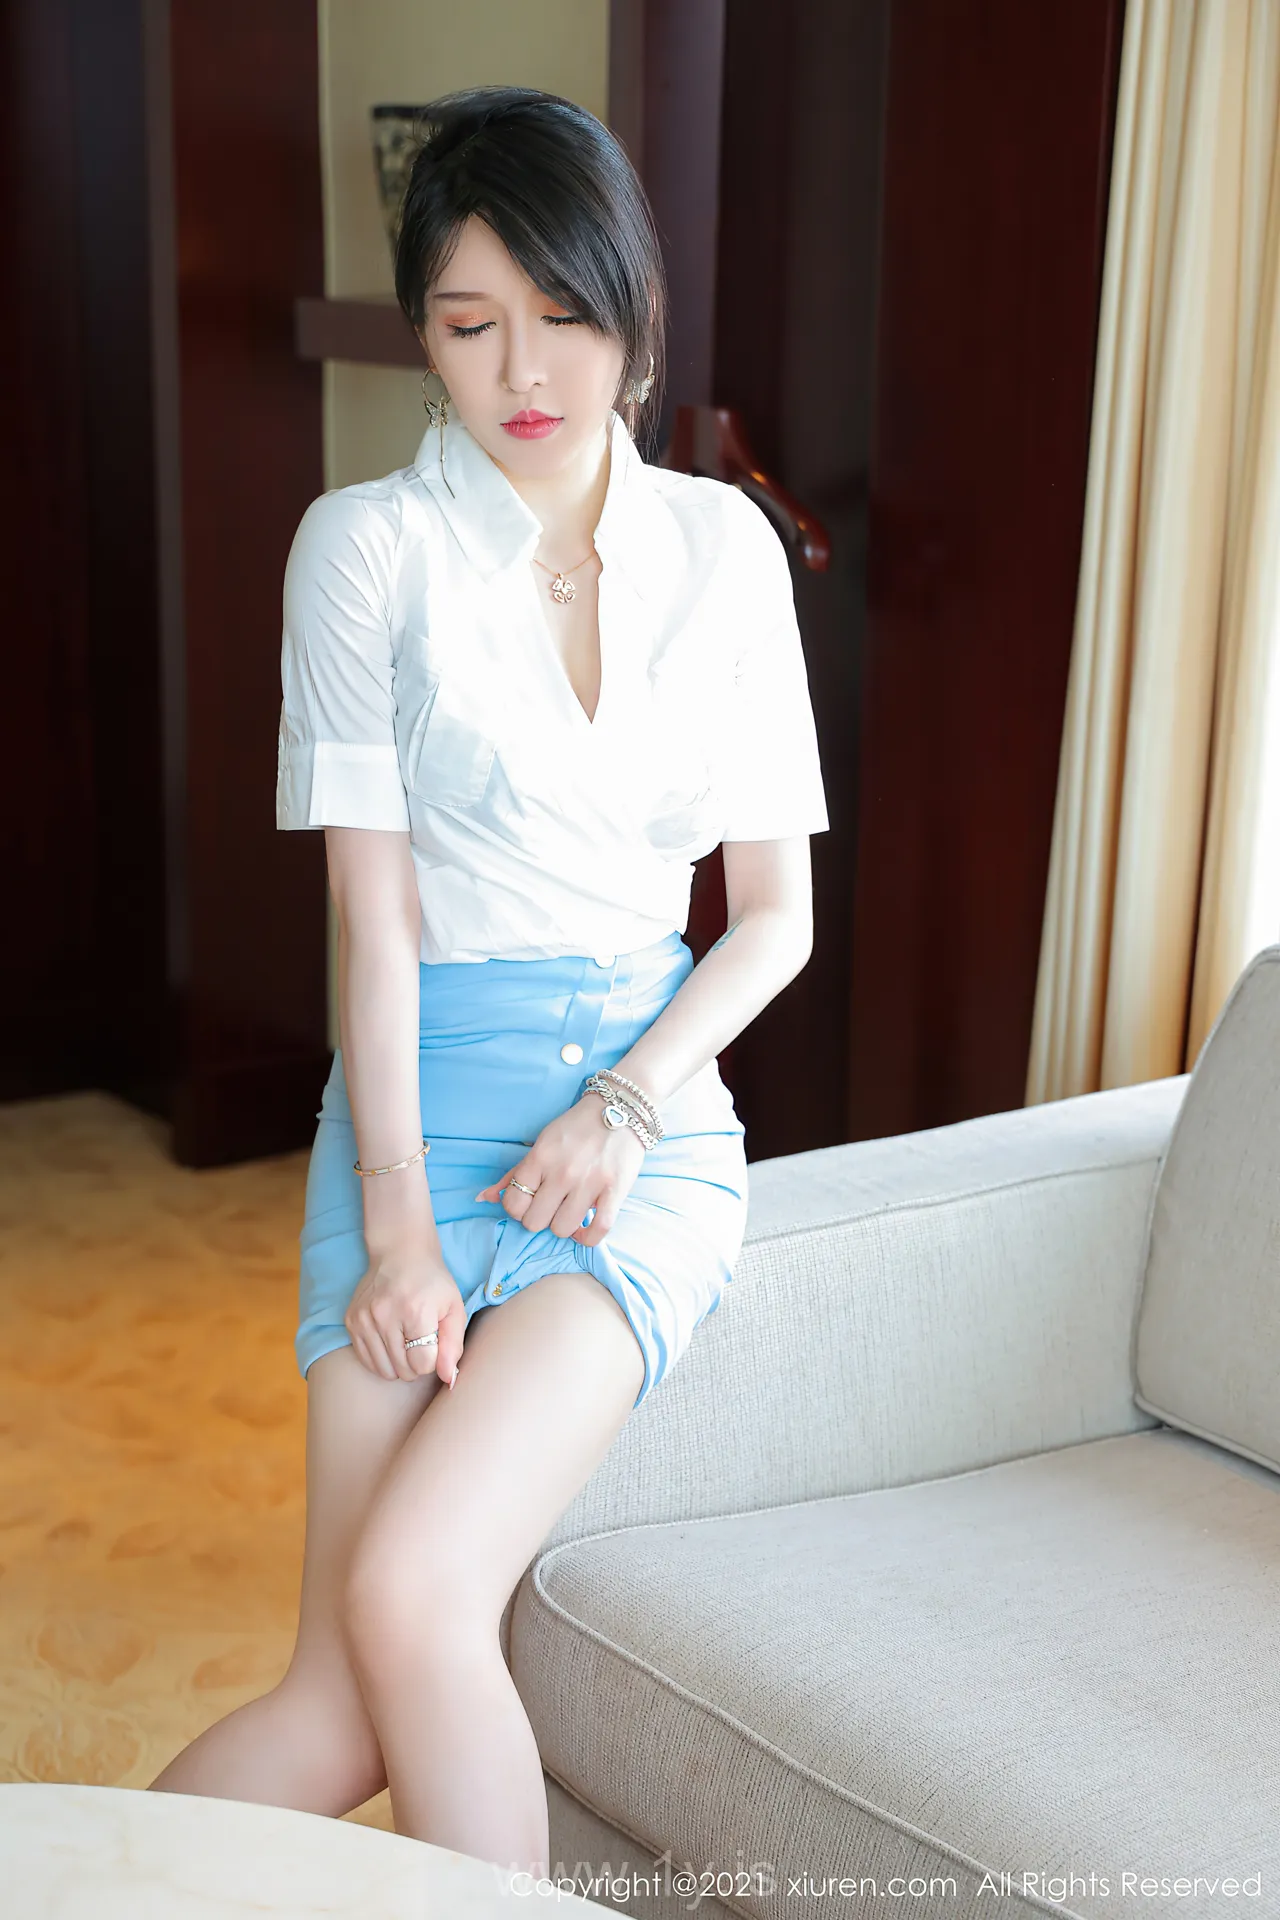 XIUREN(秀人网) NO.3812 Good-looking & Hot Asian Mature Princess 玉兔miki